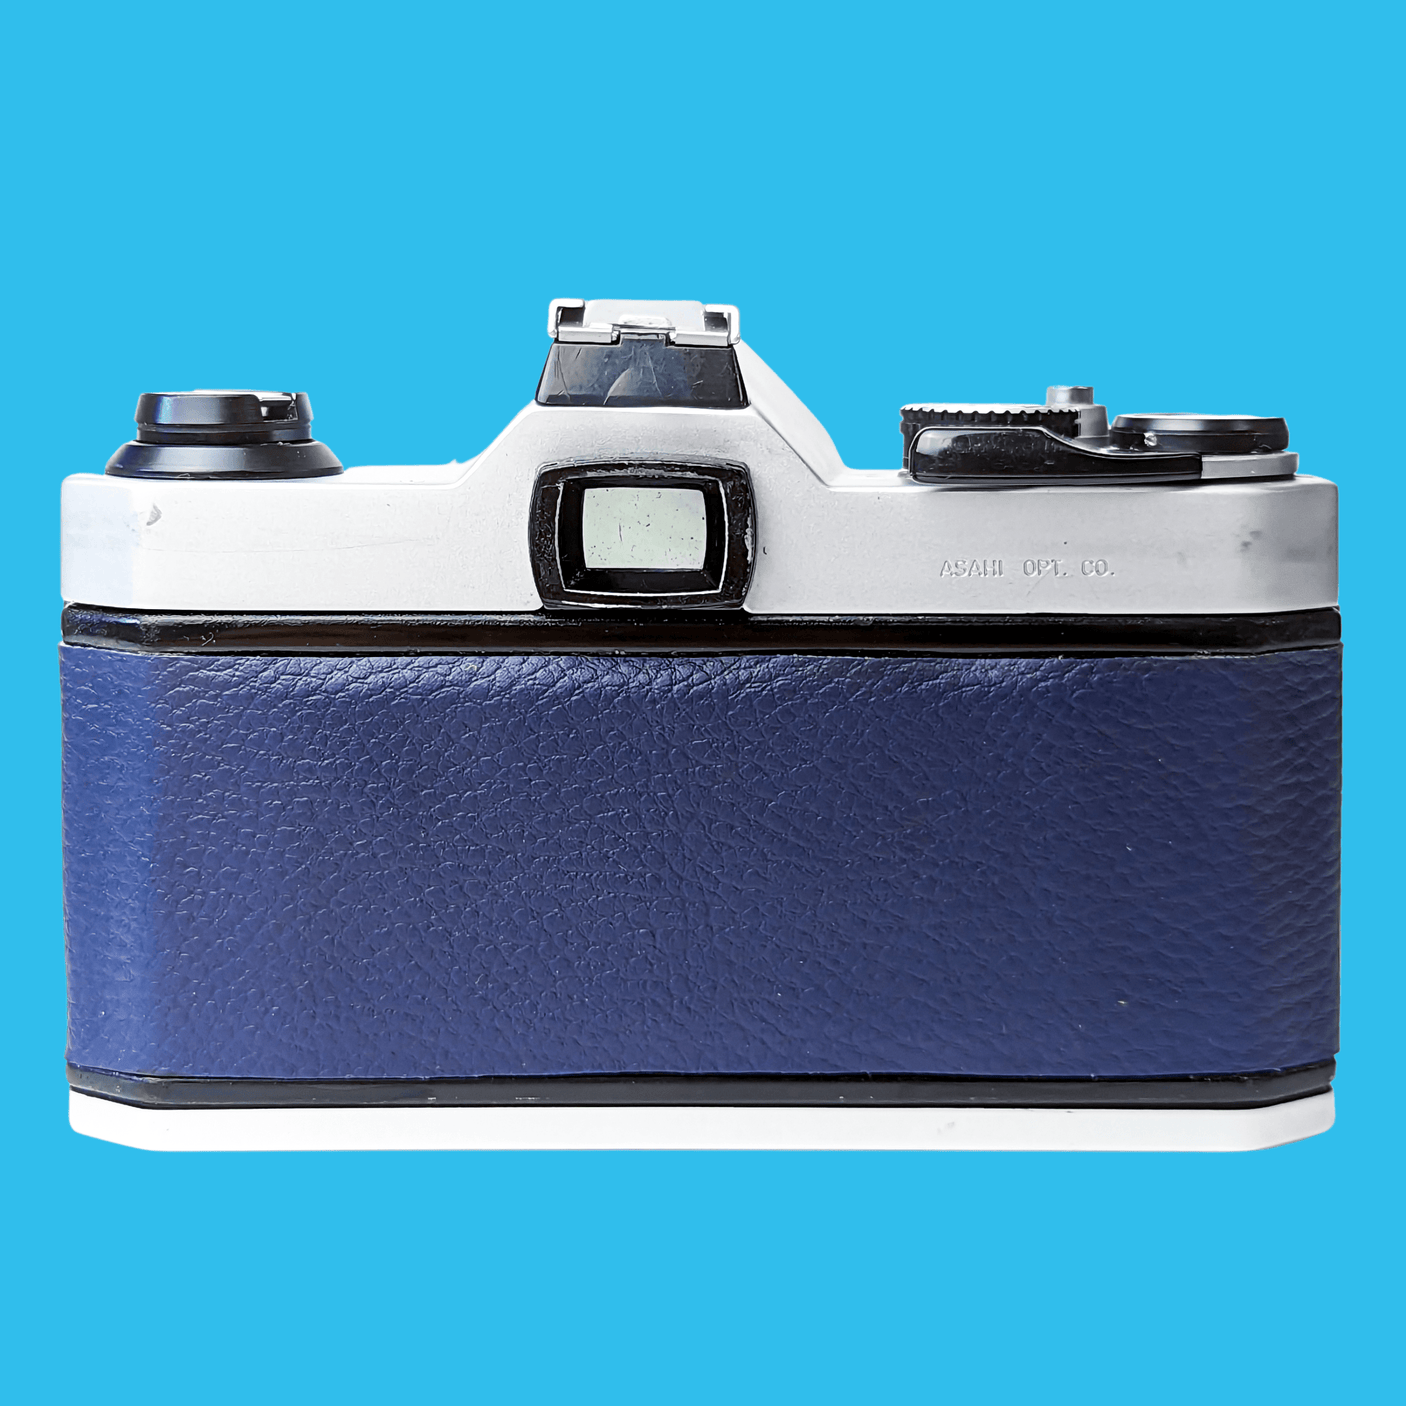 Pentax K1000 Navy Leather Vintage SLR 35mm Film Camera with Pentax f/2 50mm Prime Lens.